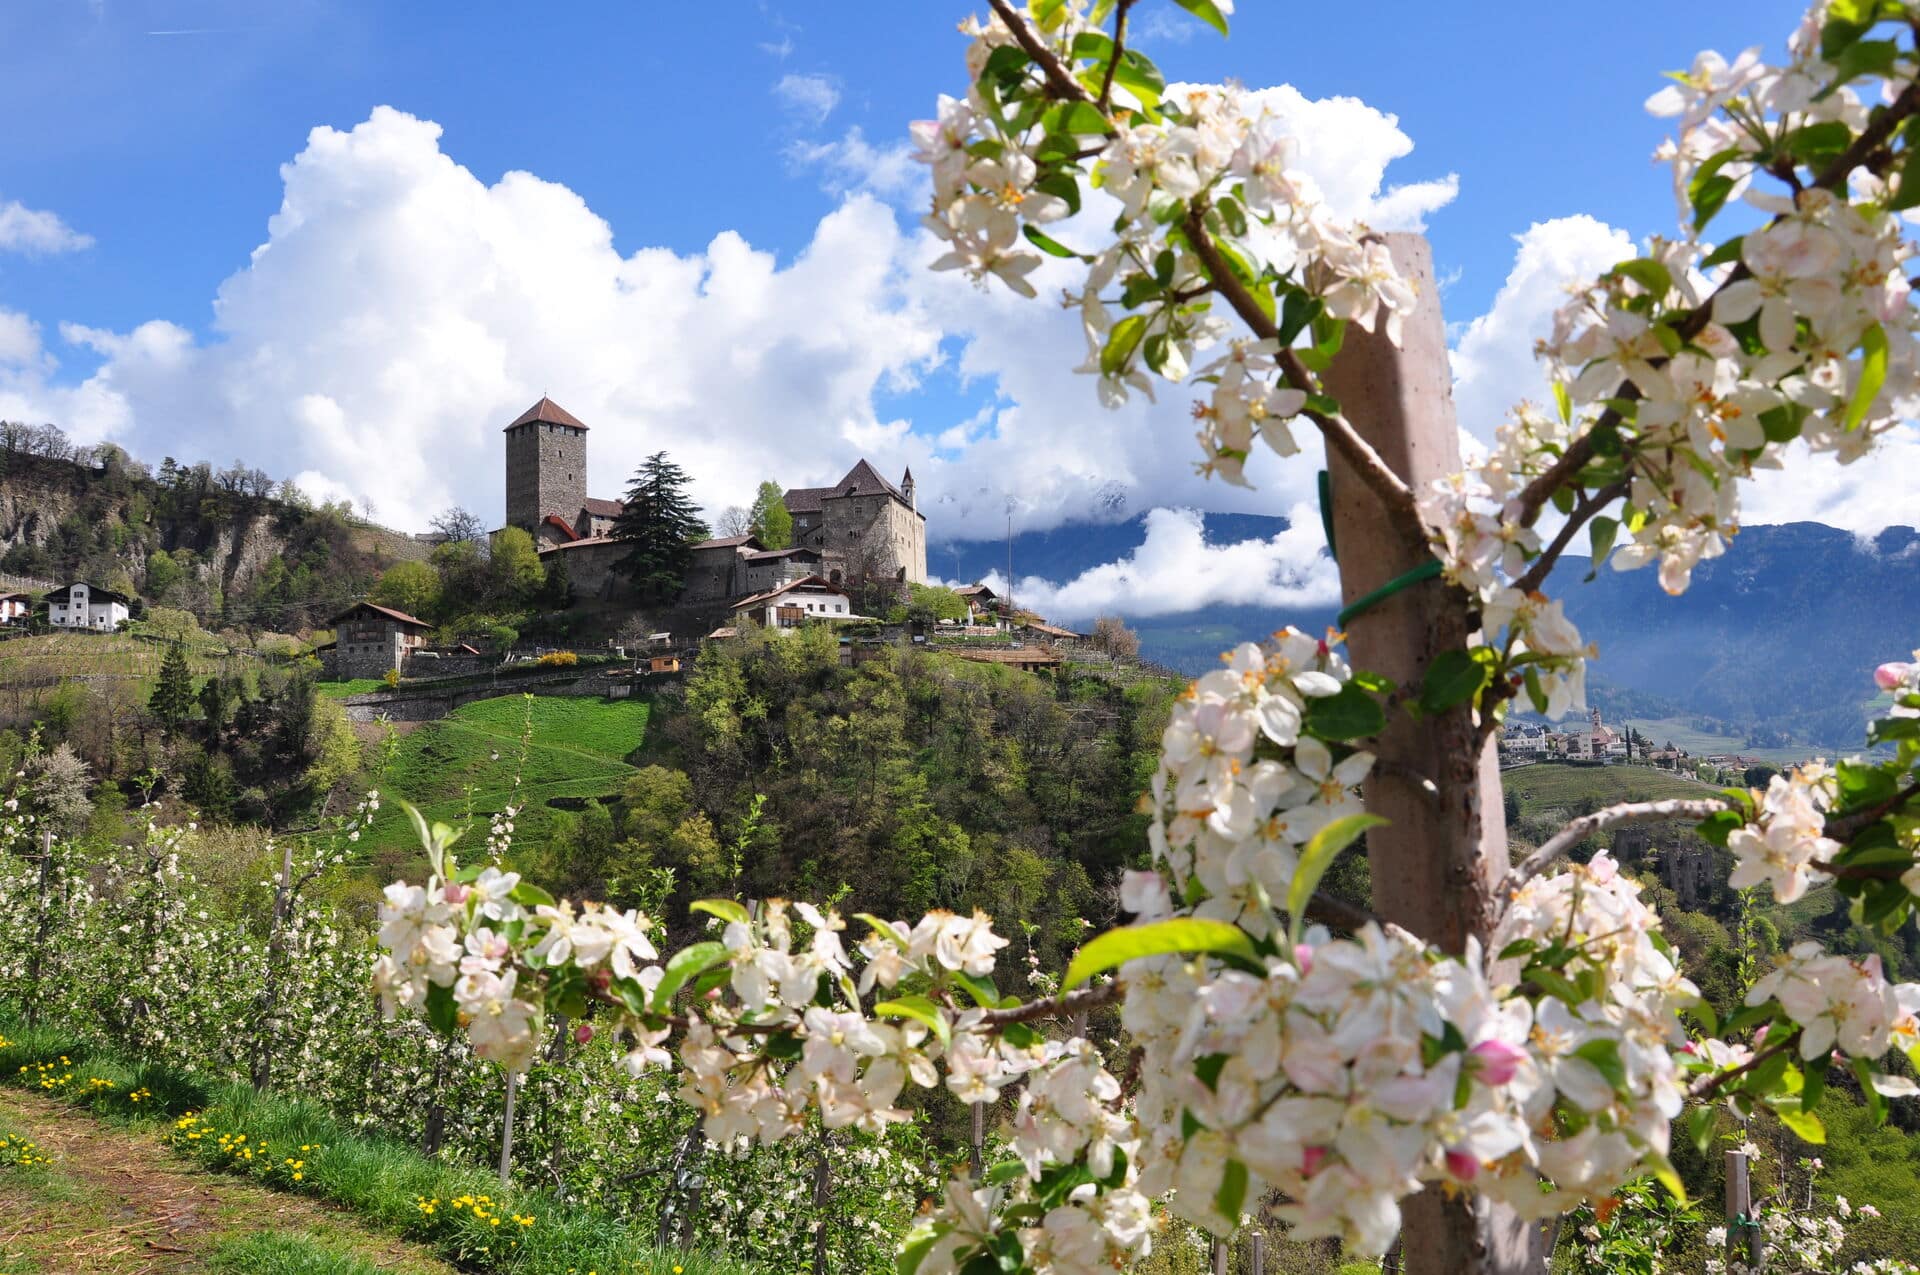 Apfelblüte in Südtirol - Frühlingsurlaub in Südtirol